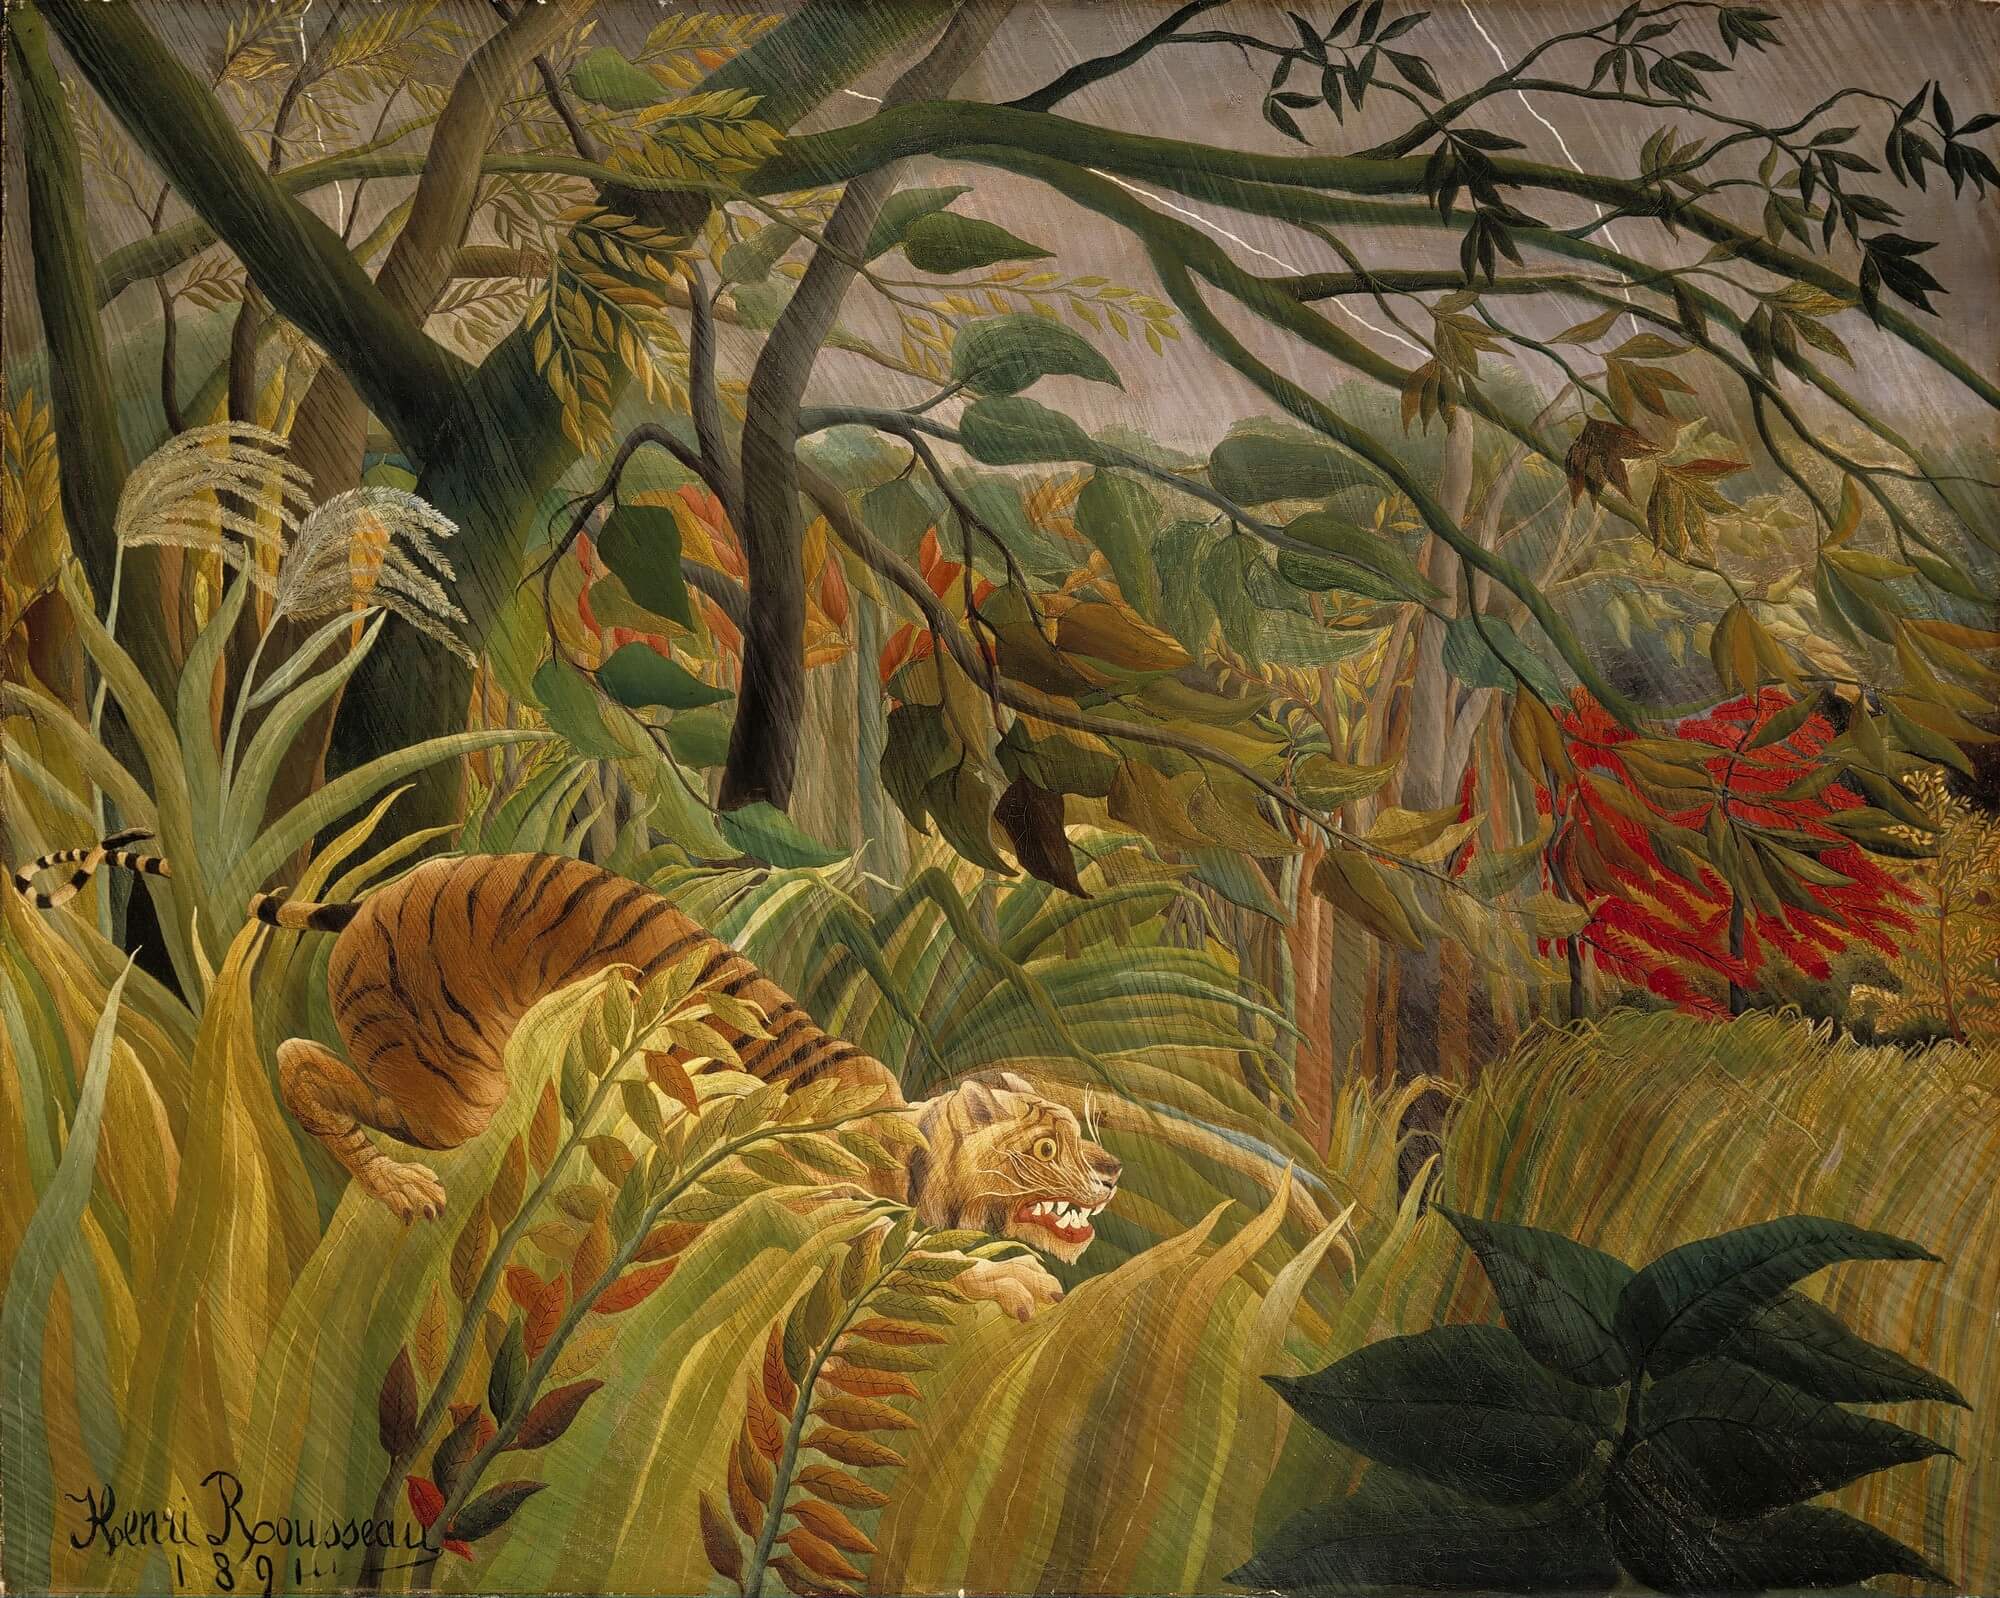 Attack in the Jungle